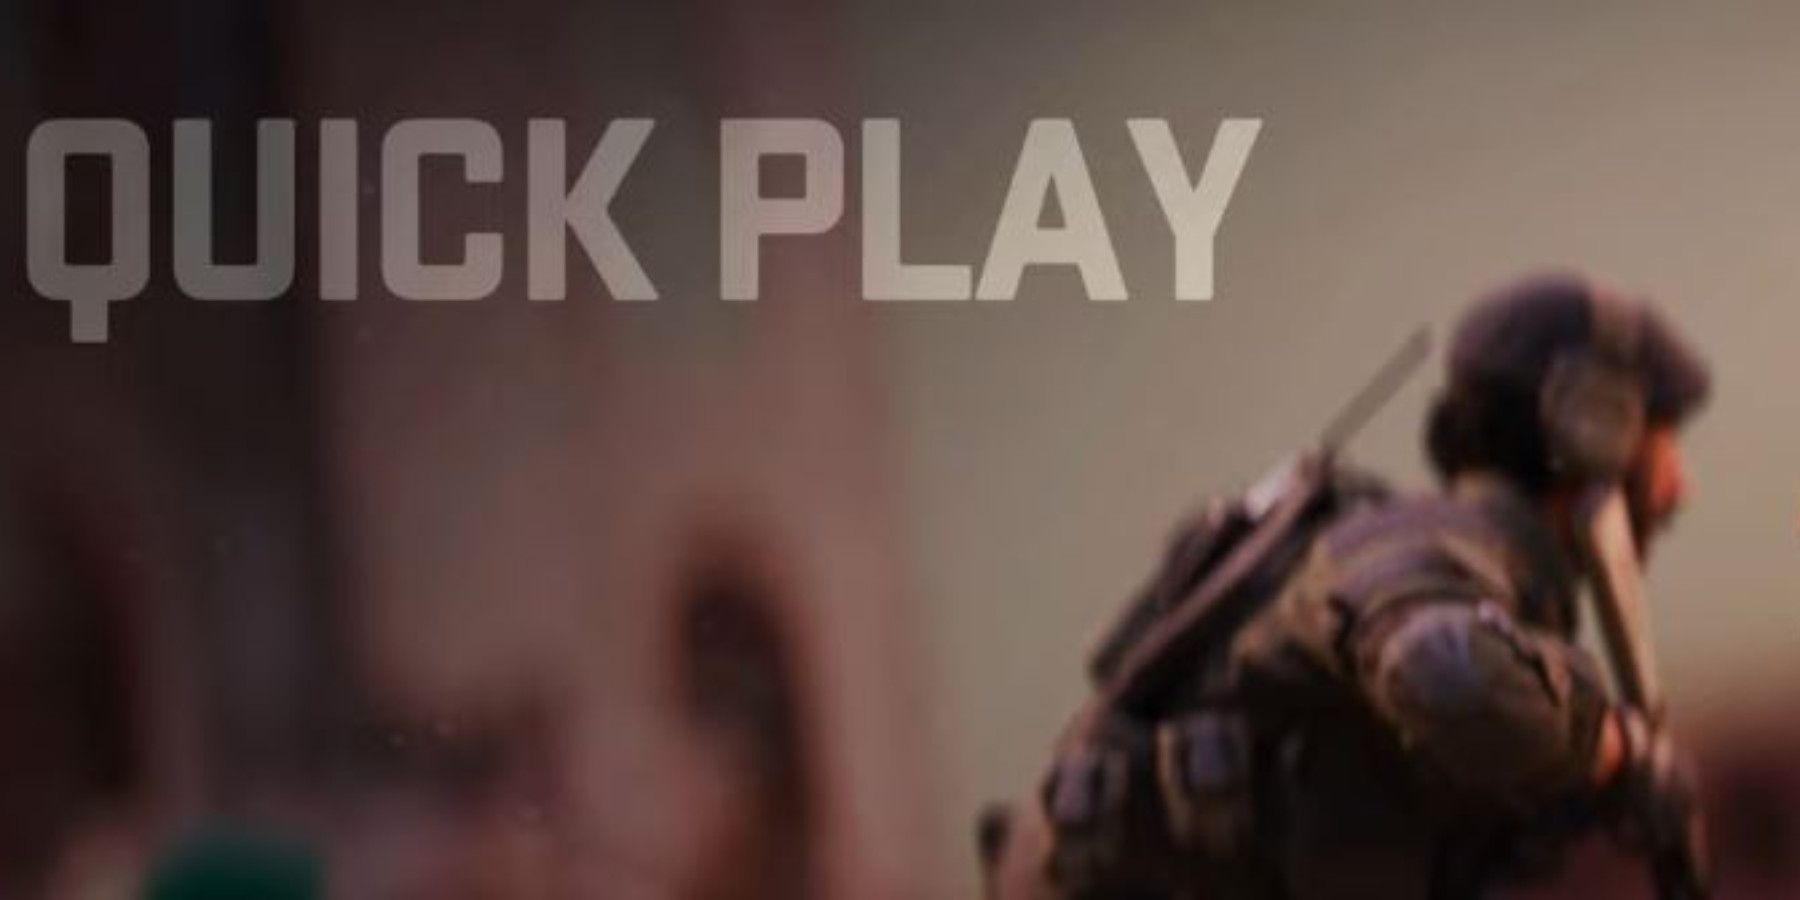 Call of Duty Modern Warfare 2 Quickplay spiltscreen